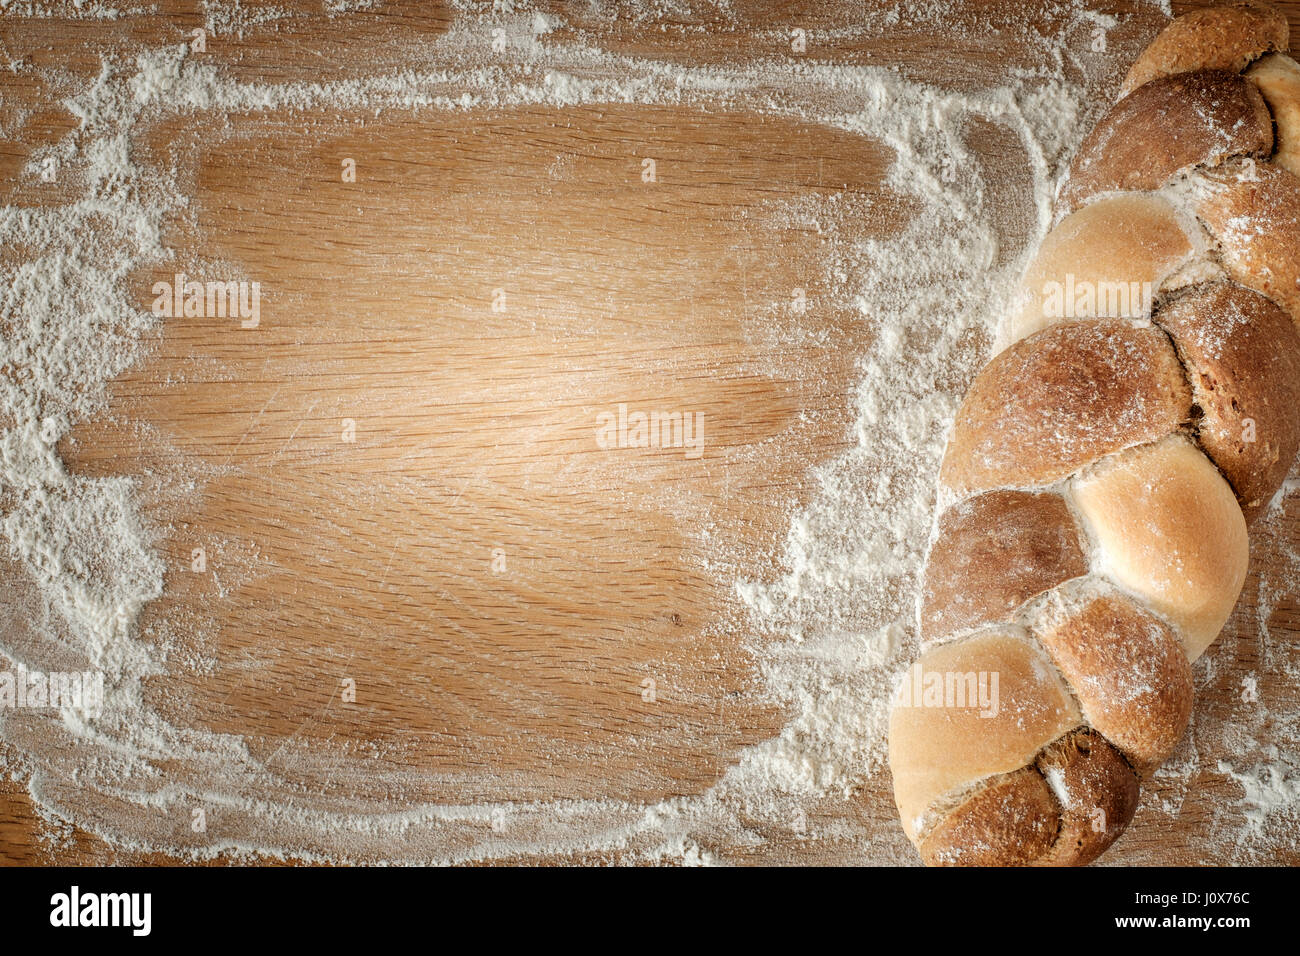 3 Arten miteinander Brot auf einem Holztisch liegend mit textfreiraum verwoben. Food-Konzept Stockfoto